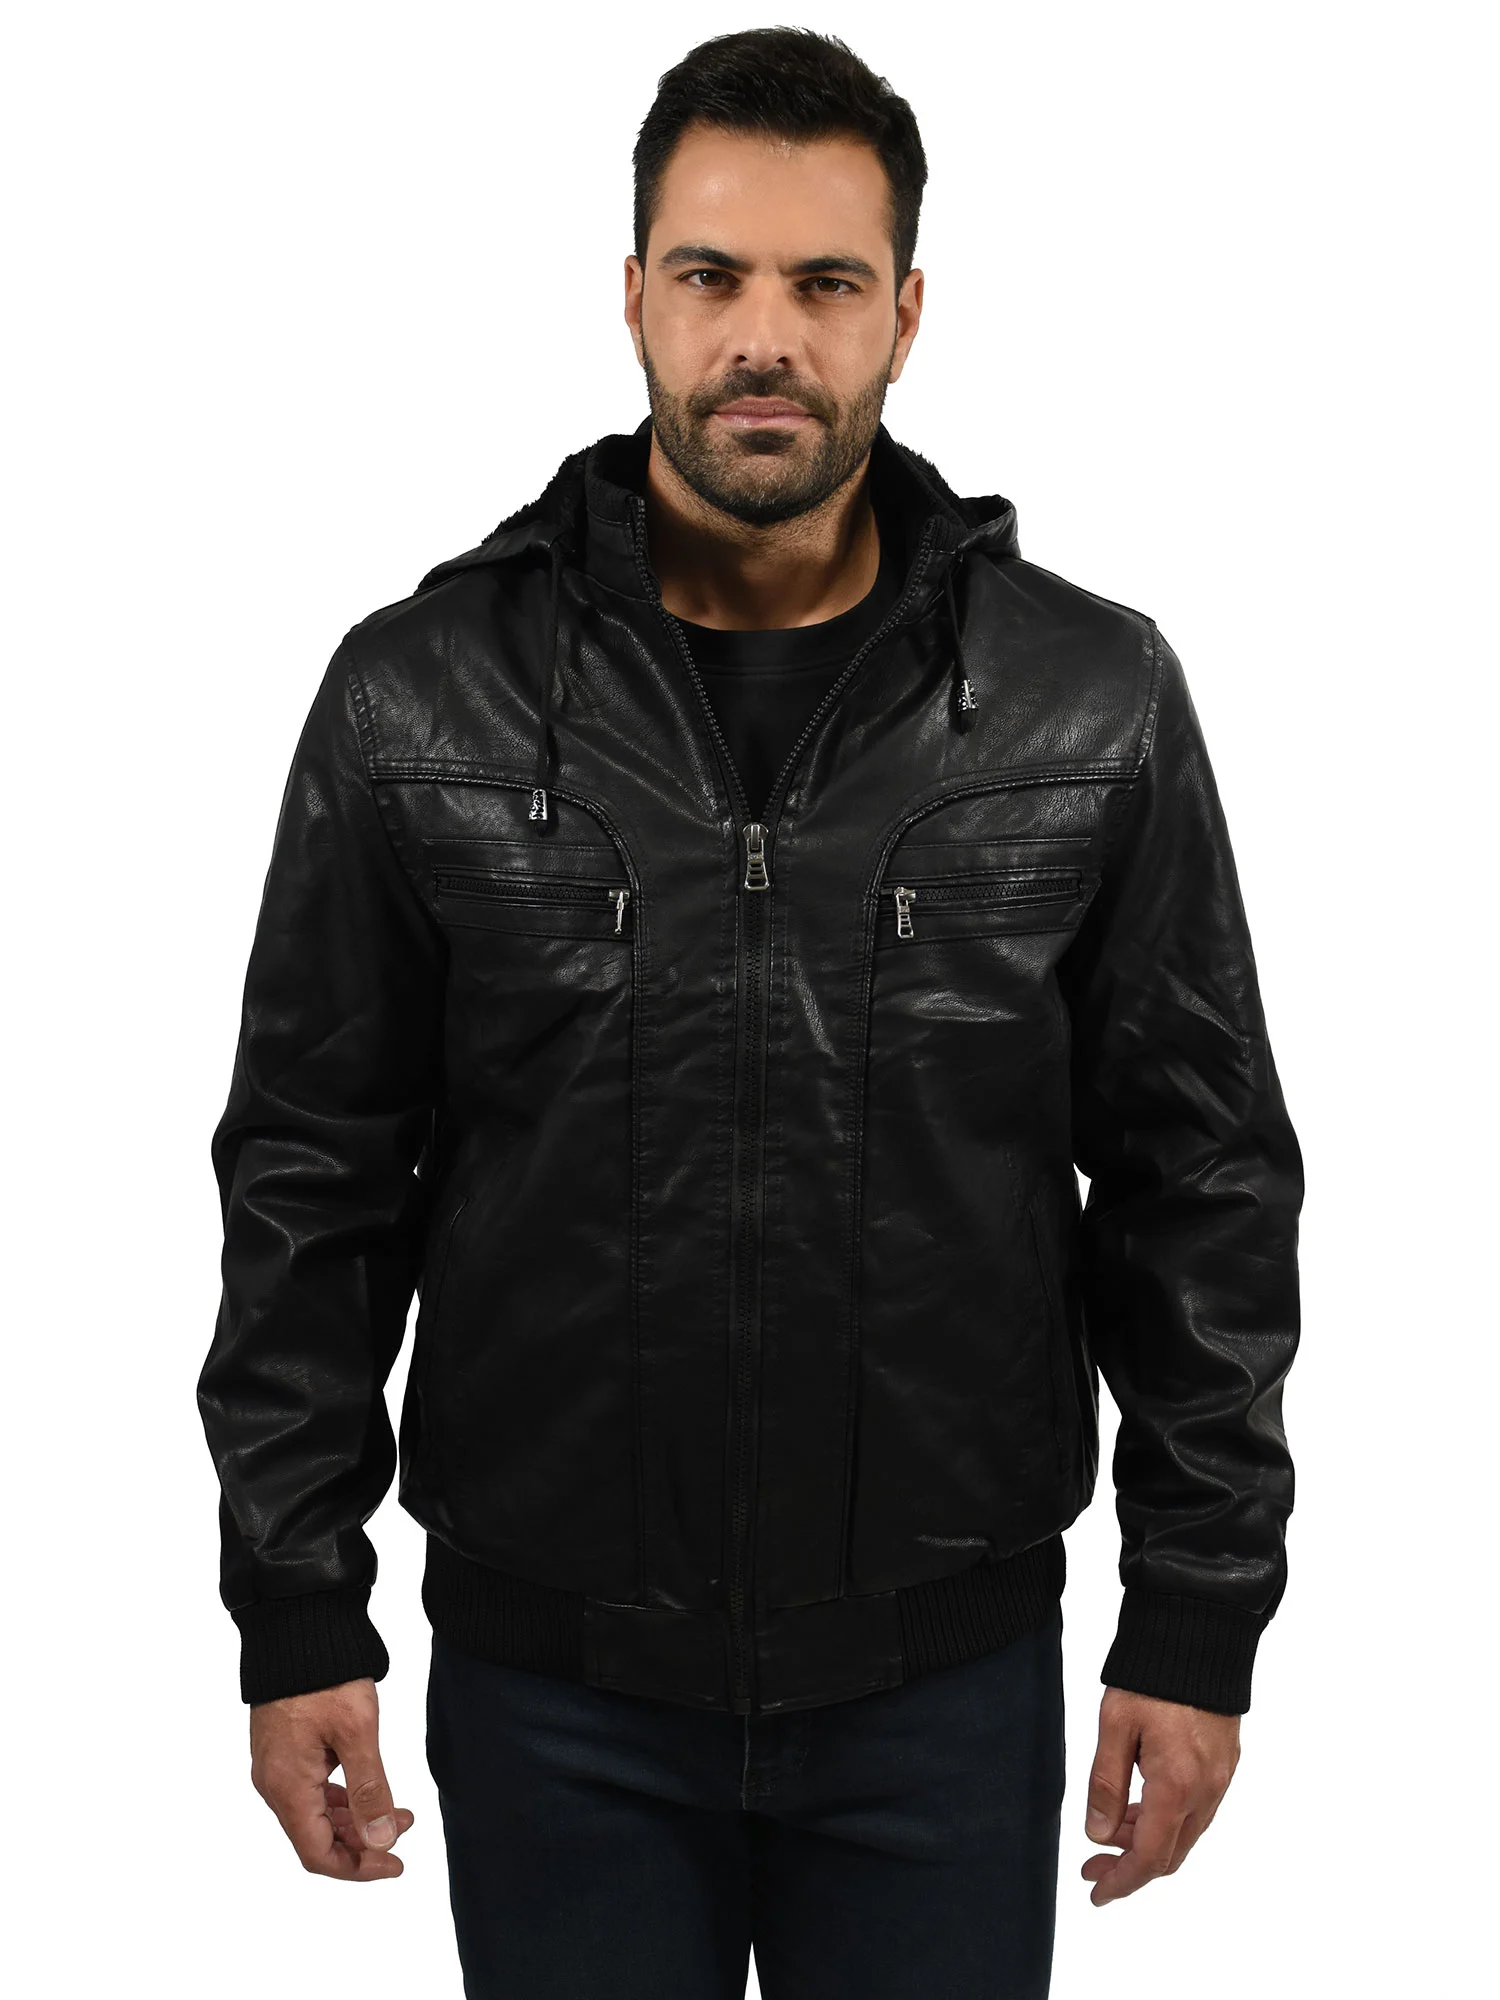 Plus men's faux leather jacket - Paris Saraliotis